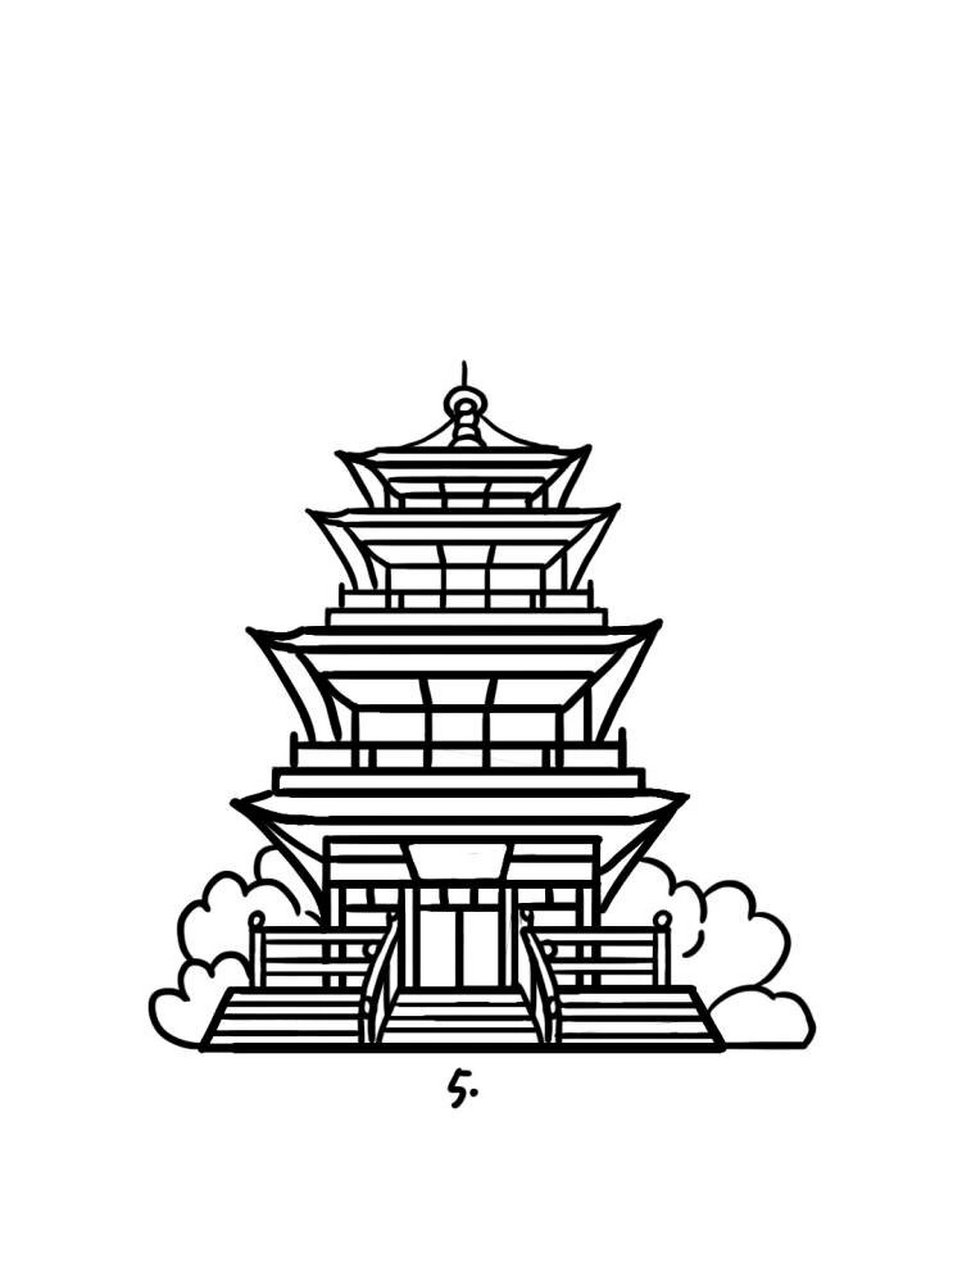 温州老建筑简笔画图片